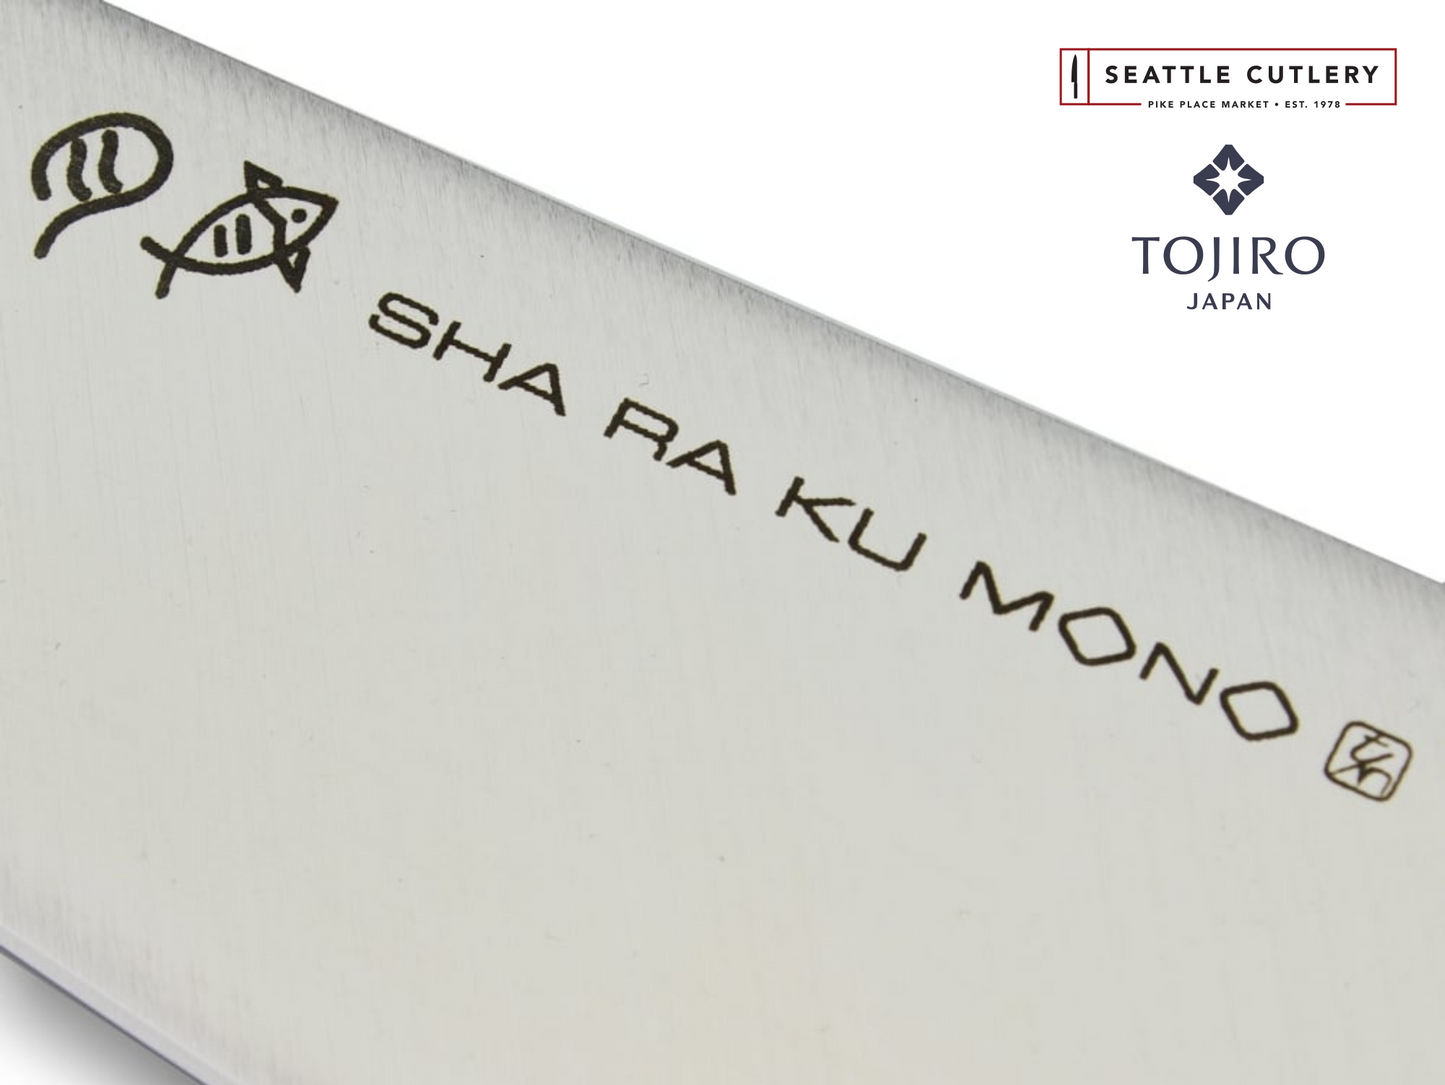 Sha Ra Ku Mono Carving Knife